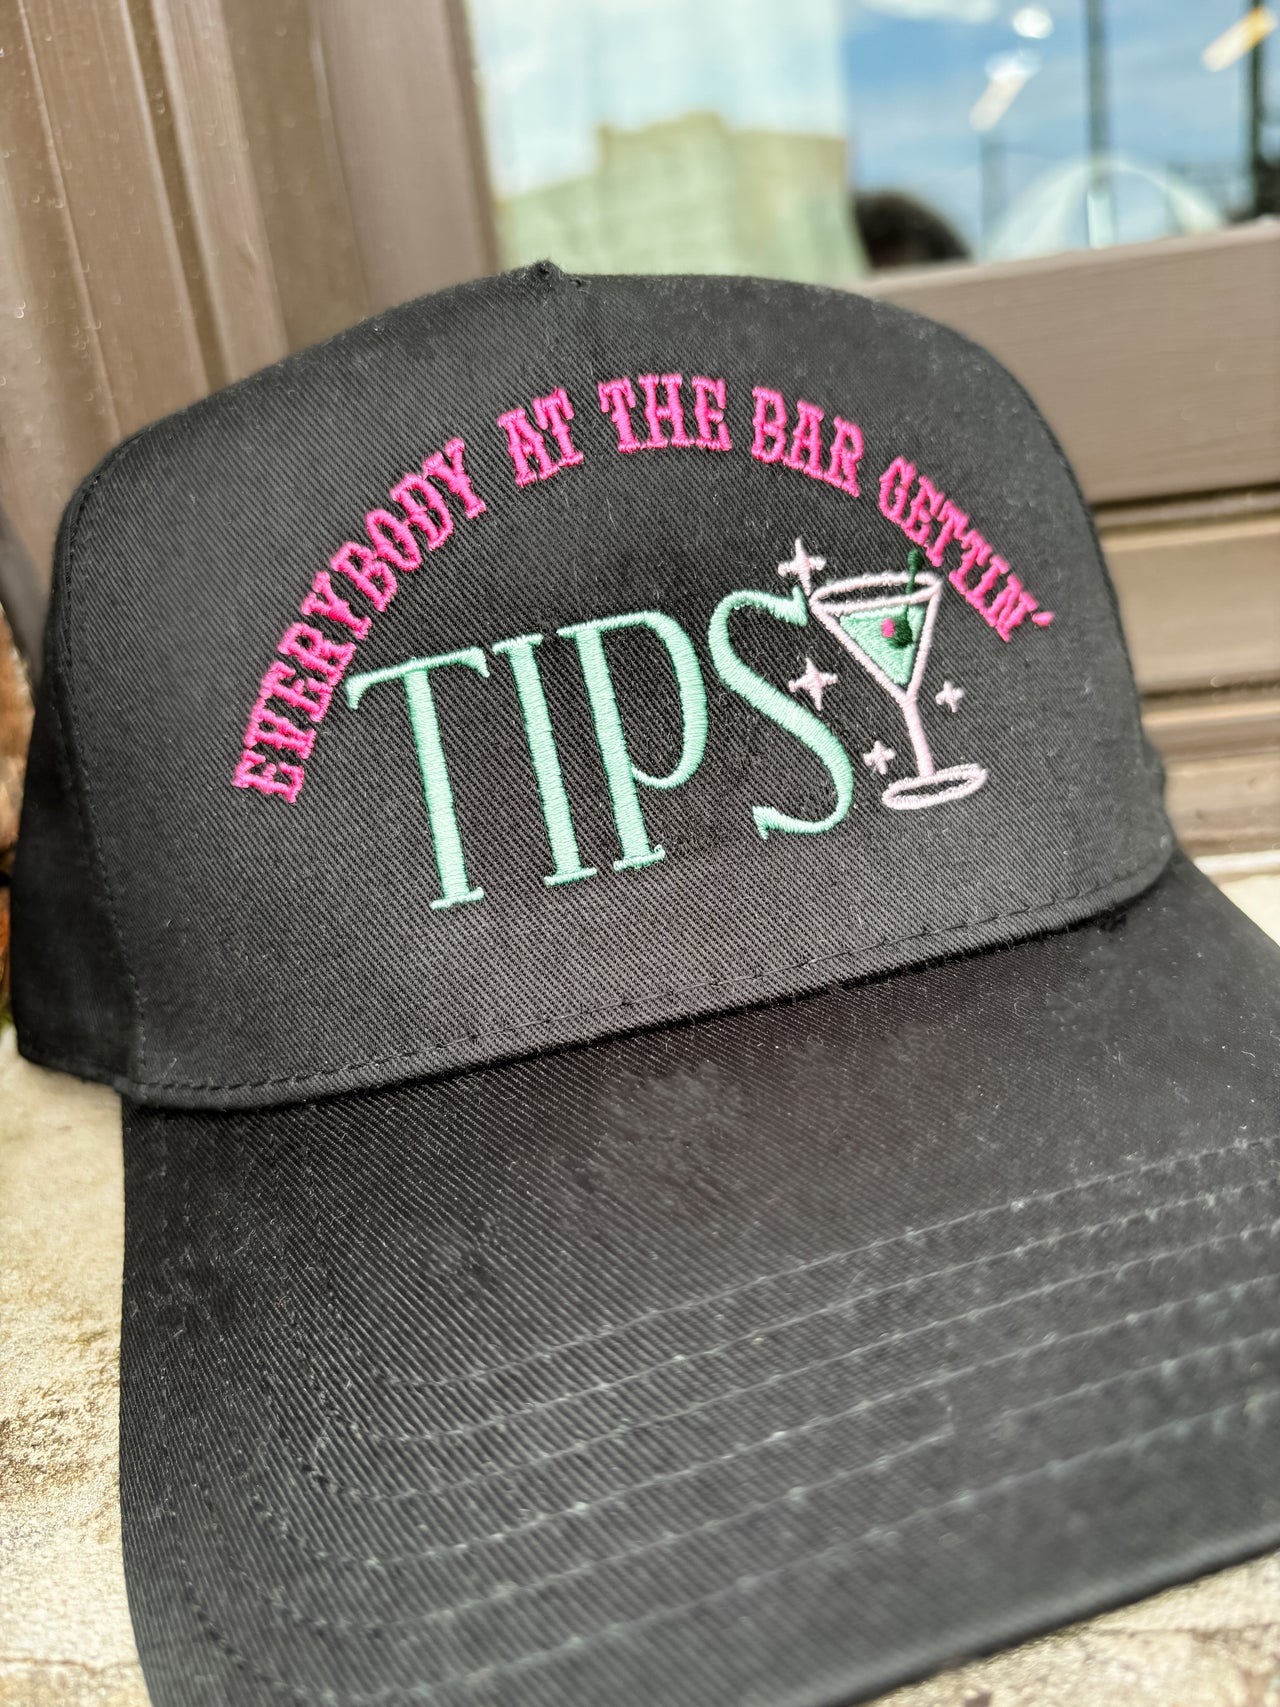 Tipsy Cap